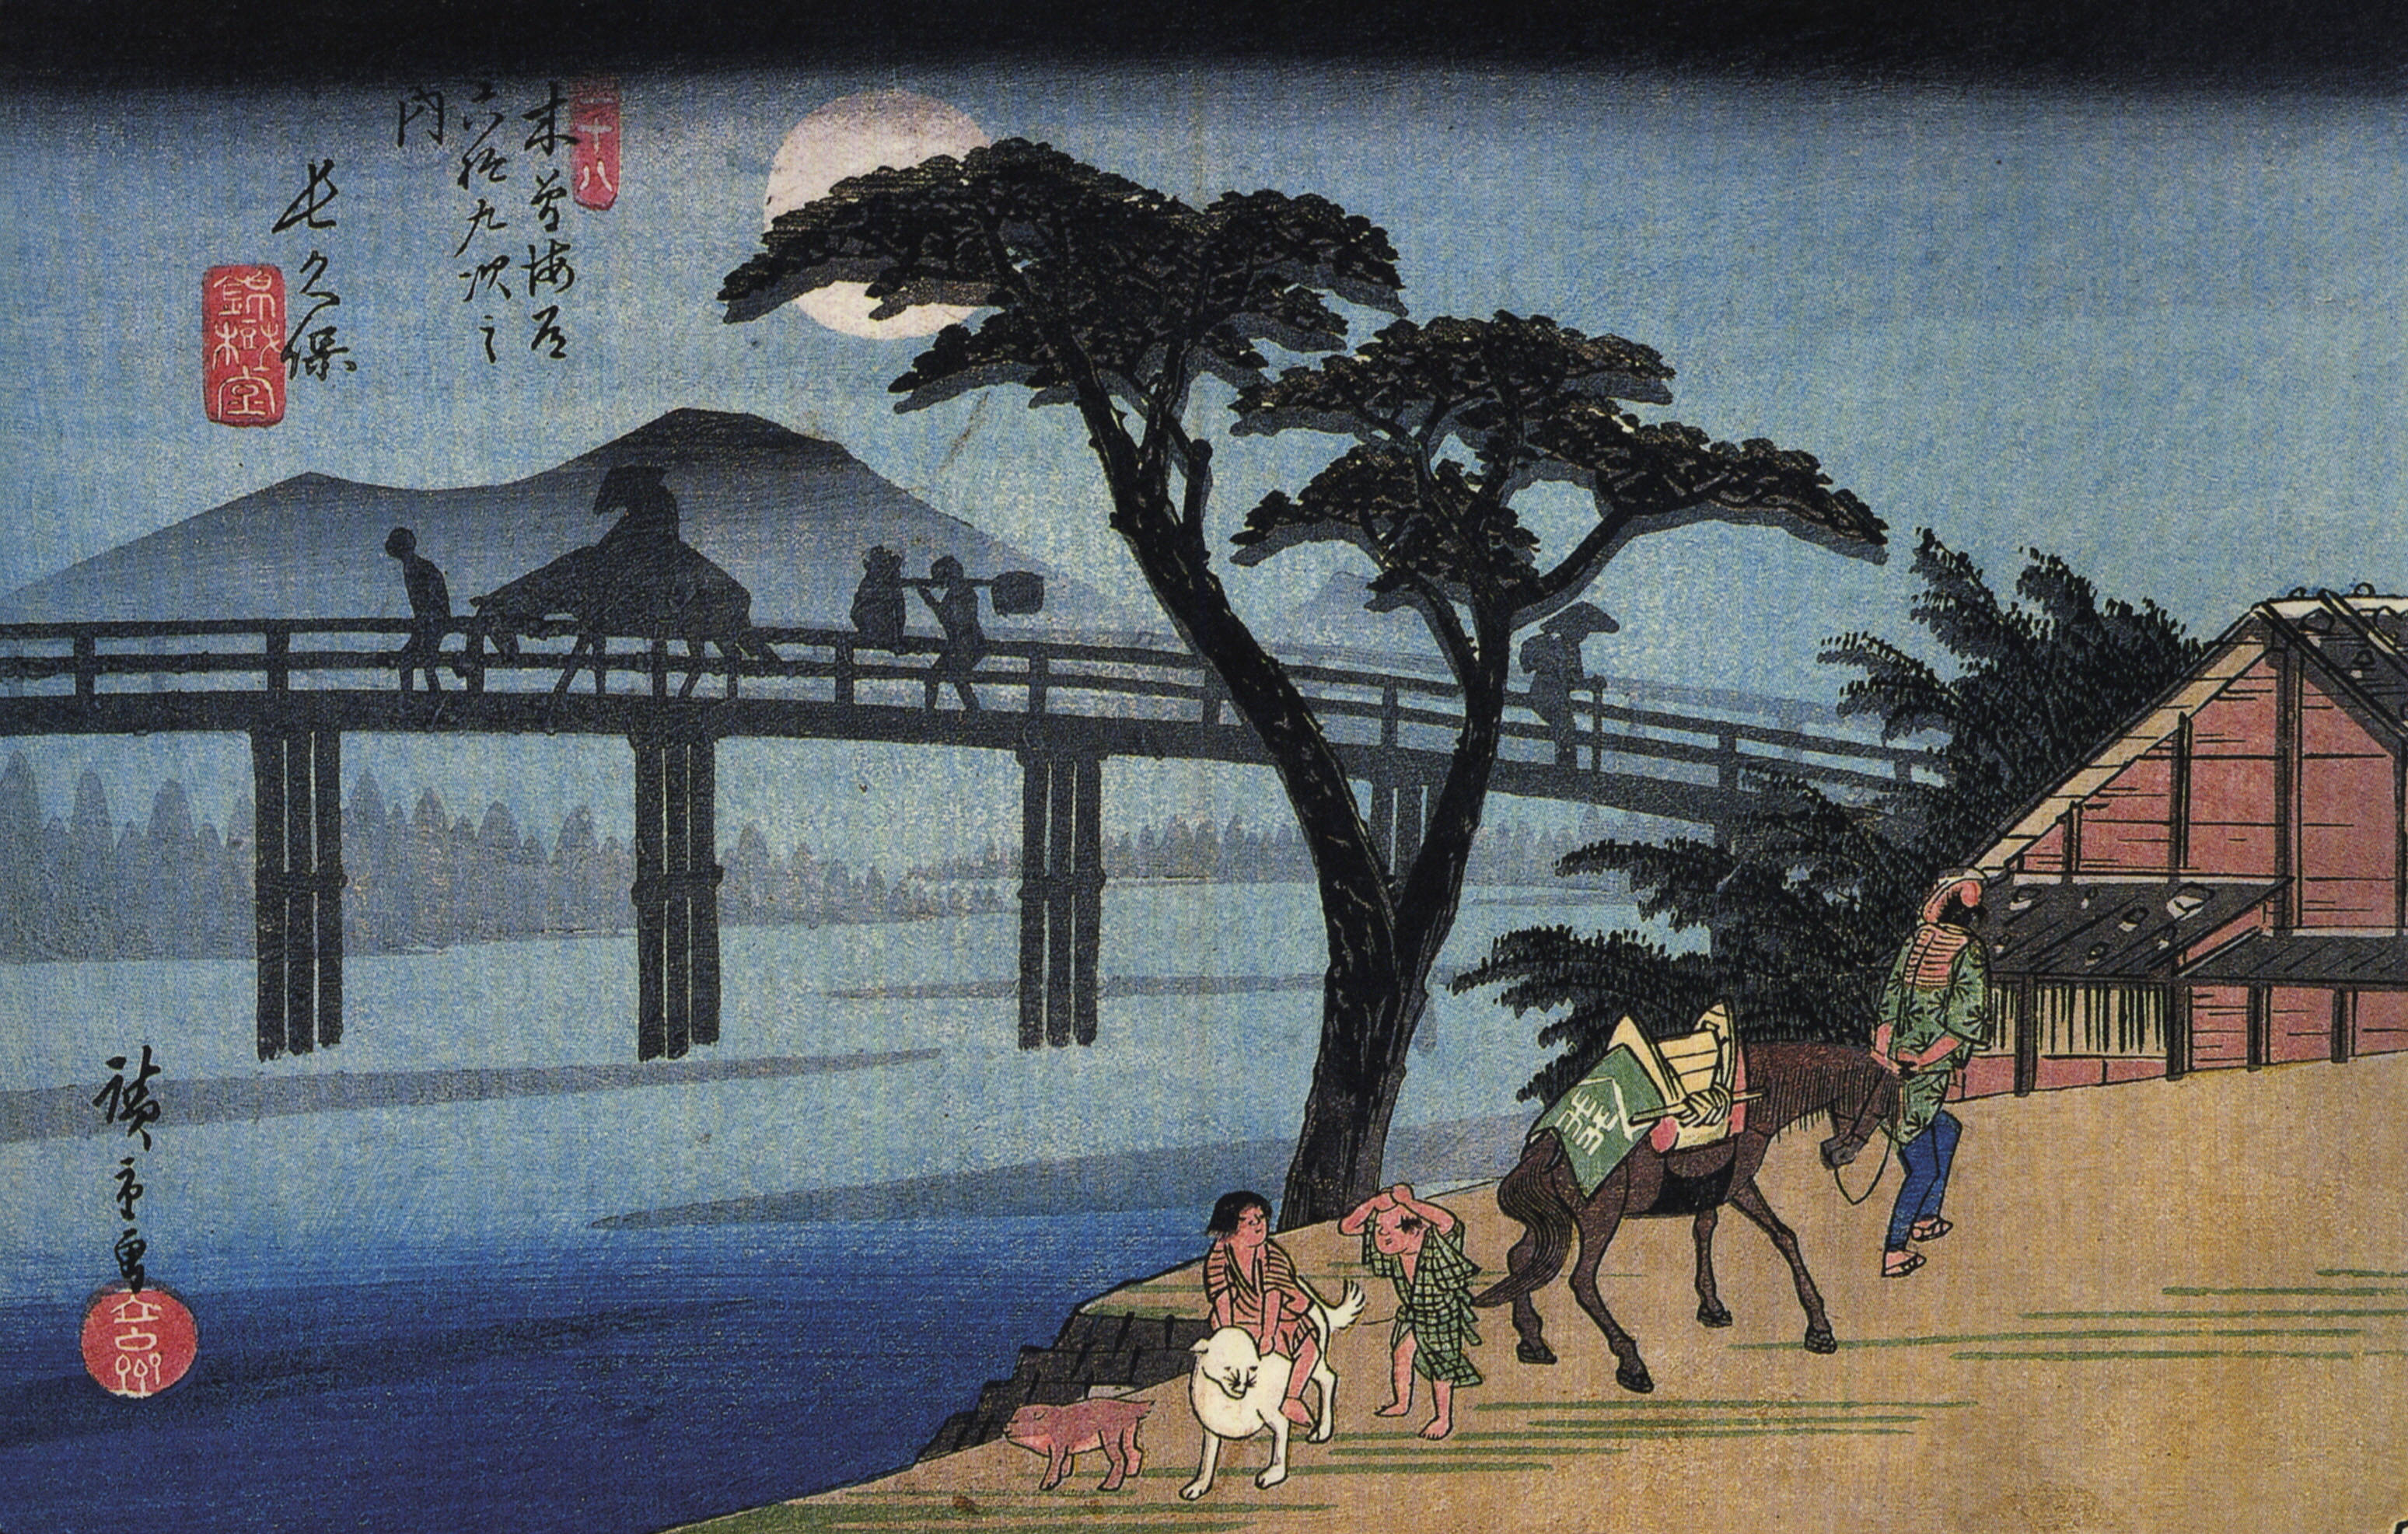 Homme à Cheval En Traversant un Pont by  Hiroshige - 1834-1842 - 18.3 x 25.6 cm Bibliothèque du Congrès